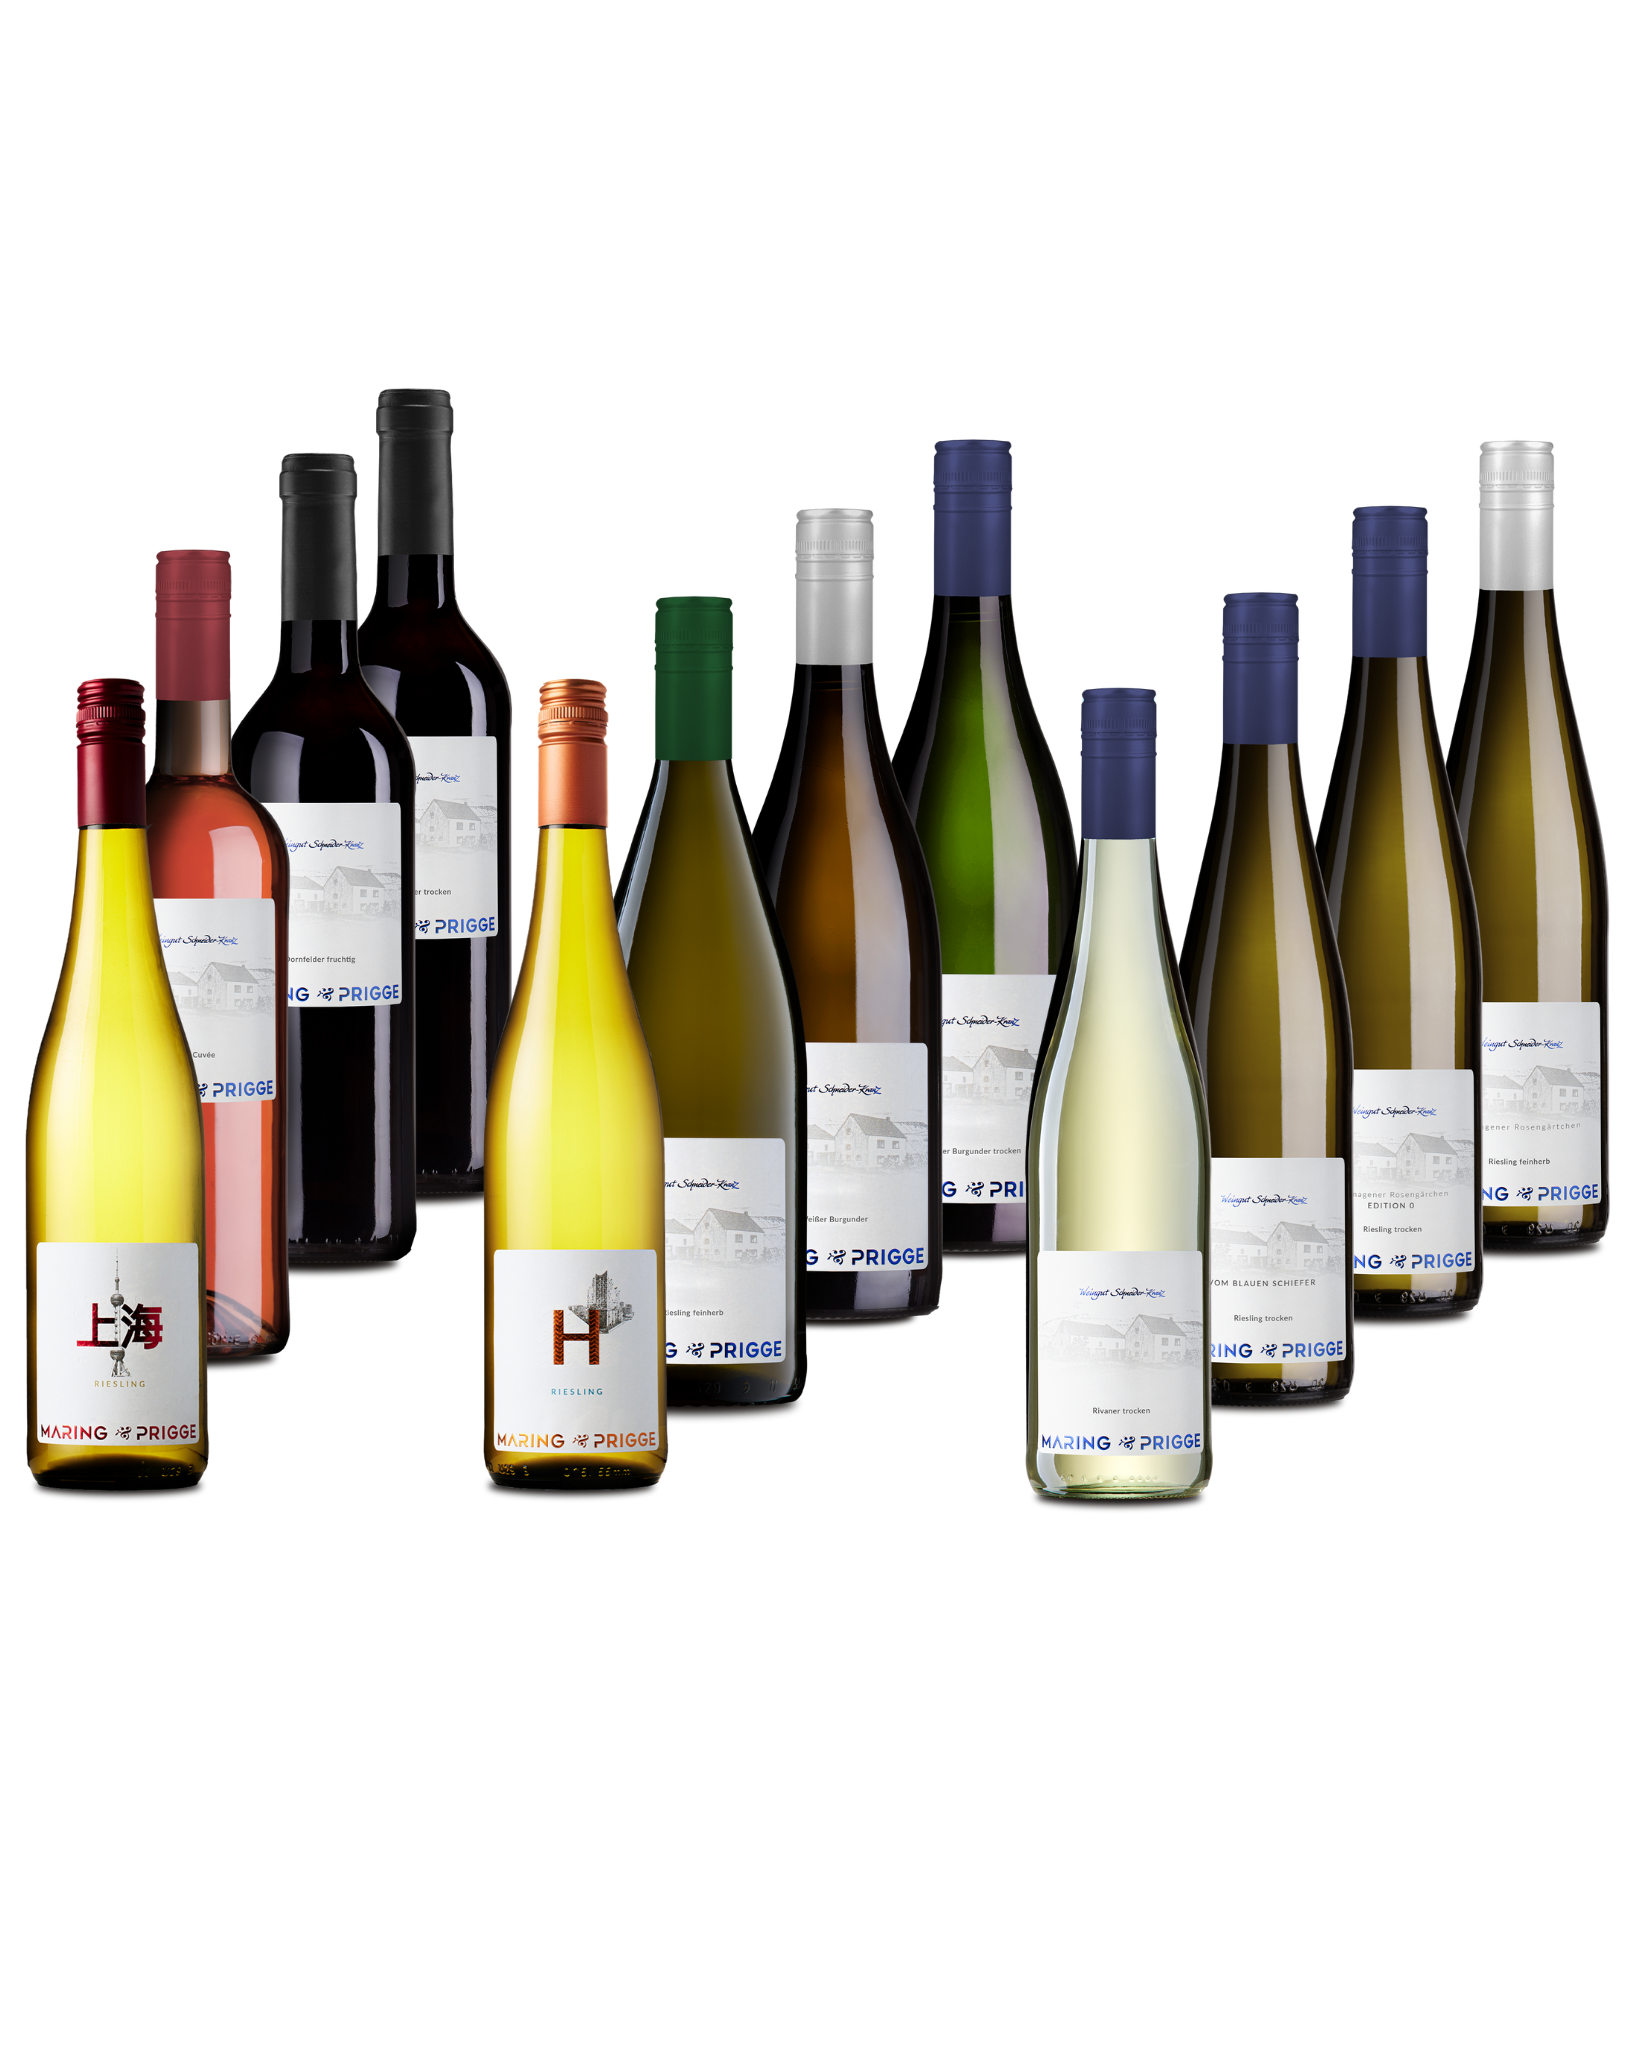 Maring-Prigge Probierpaket 2 - 12 verschiedene Weinflaschen aufgereit